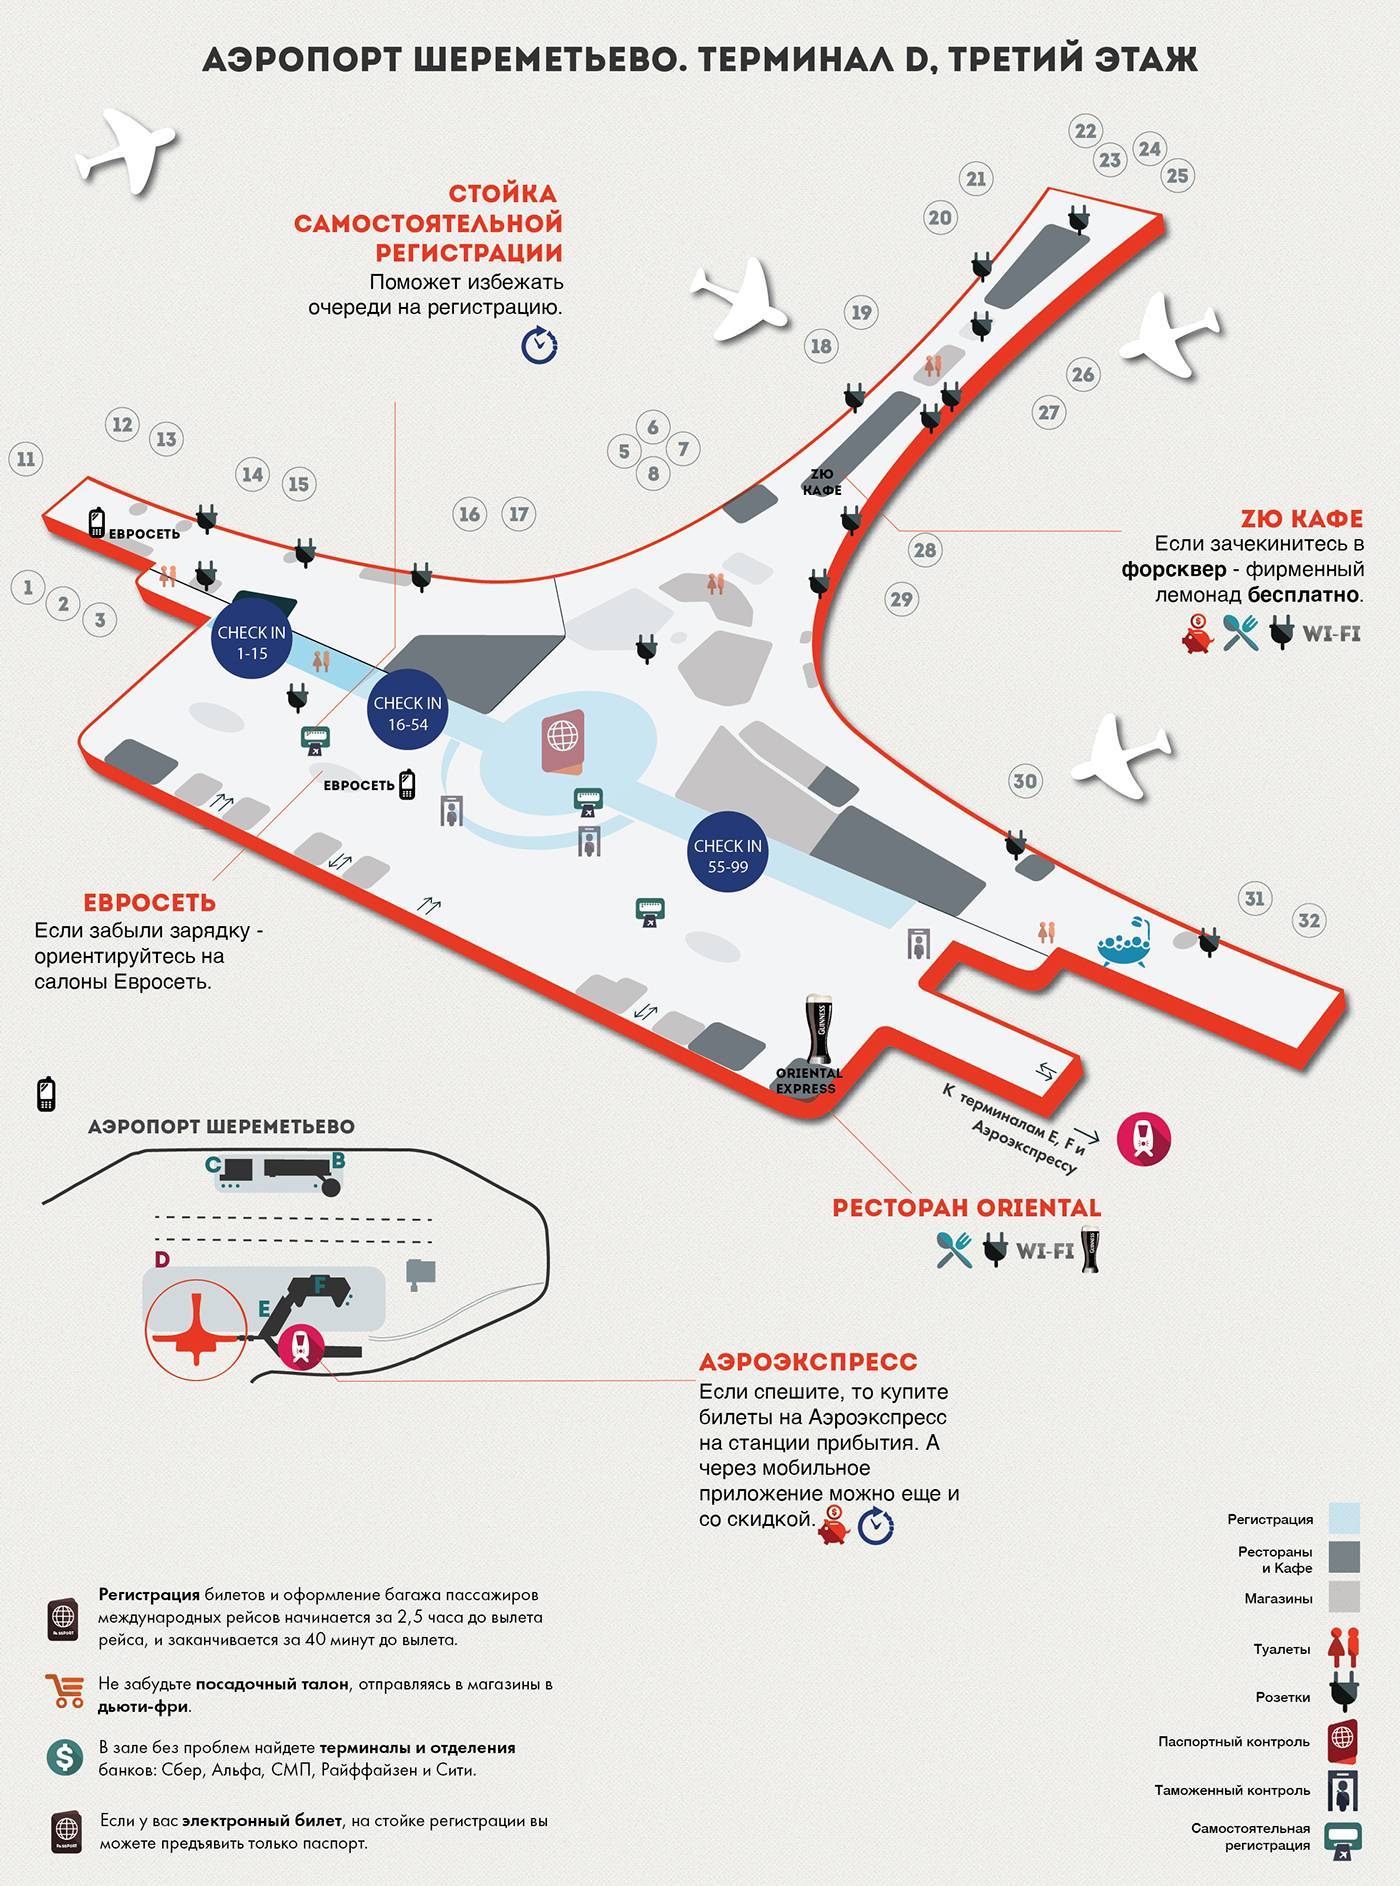 Схема проезда в аэропорт шереметьево терминал d - идеальное путешествие